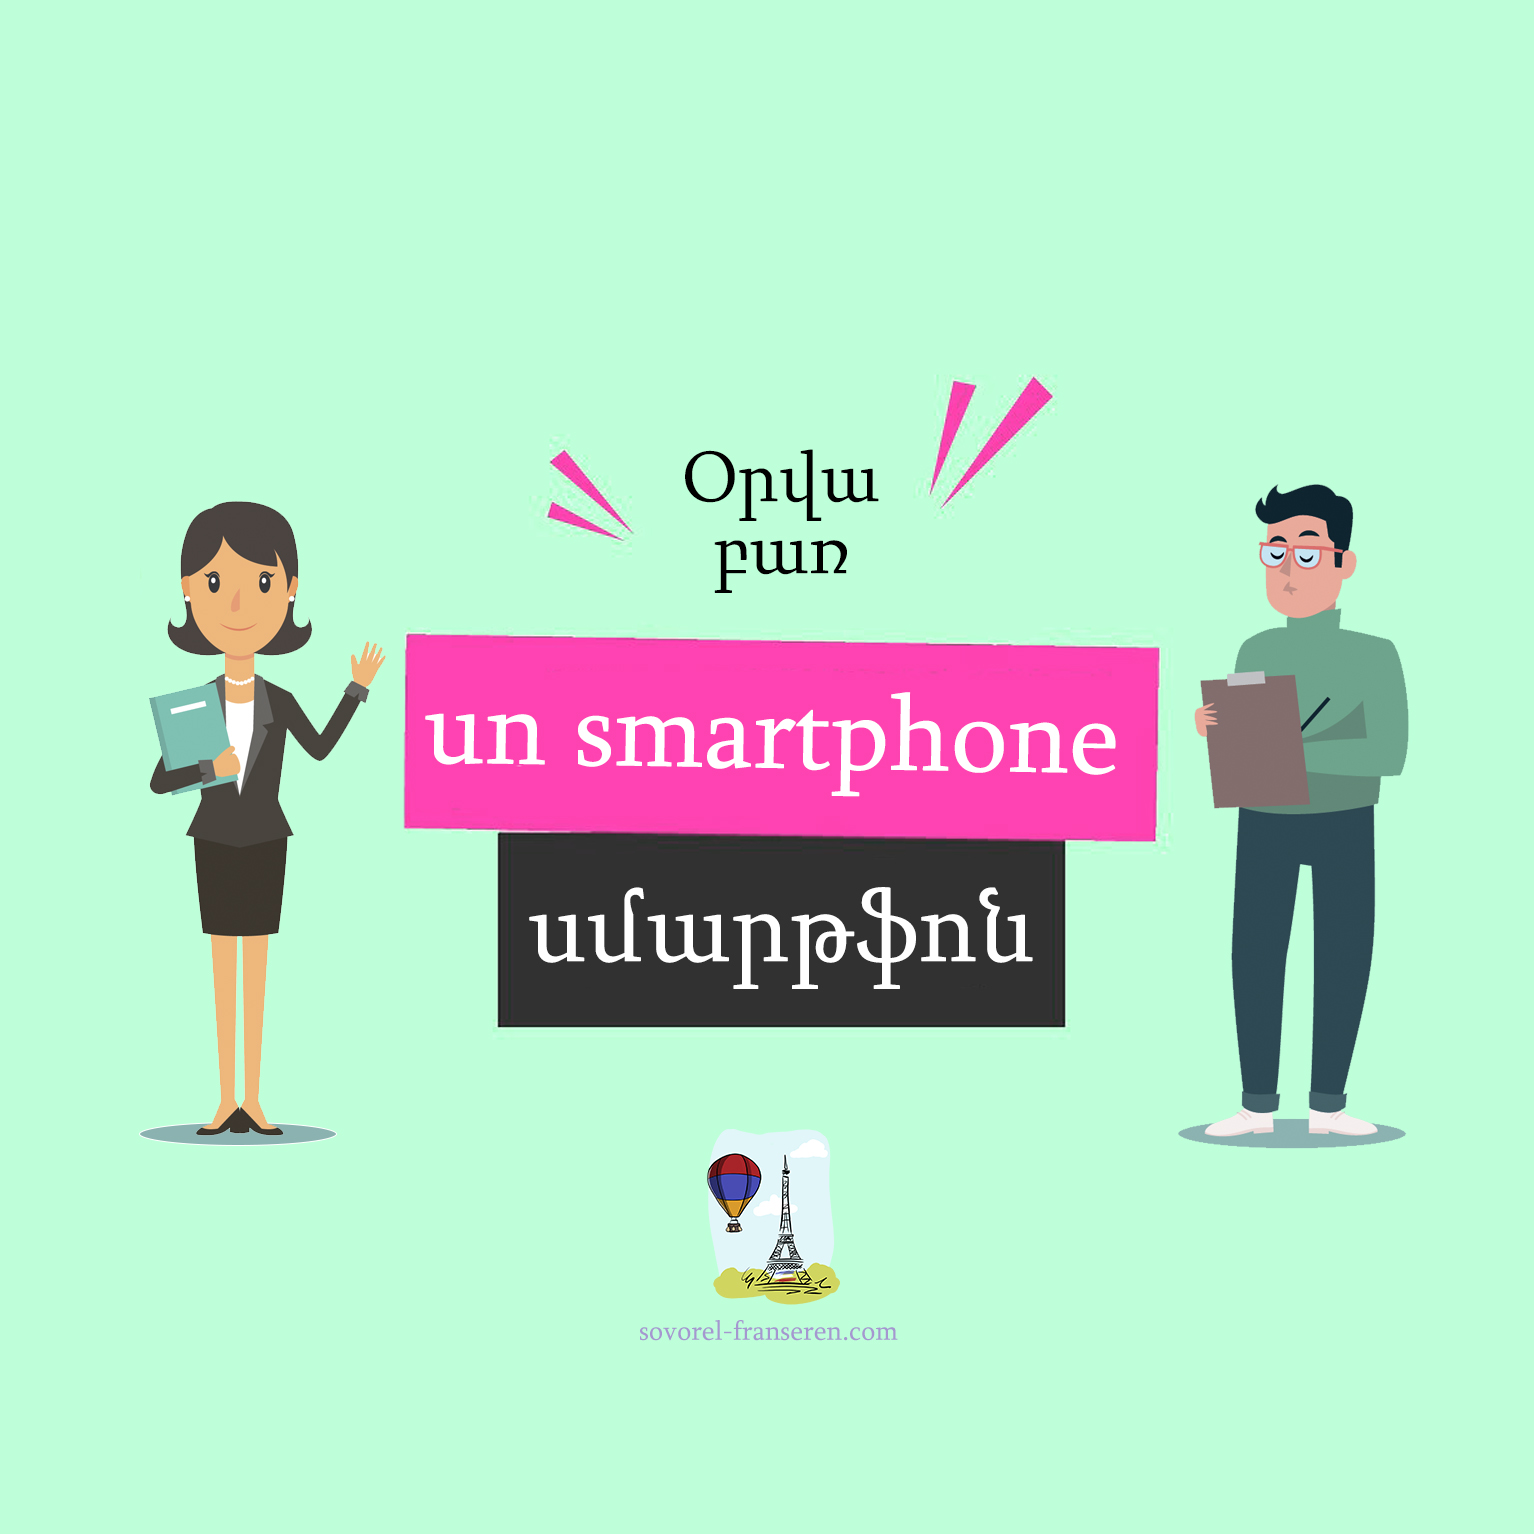 Un smartphone — Սմարթֆոն